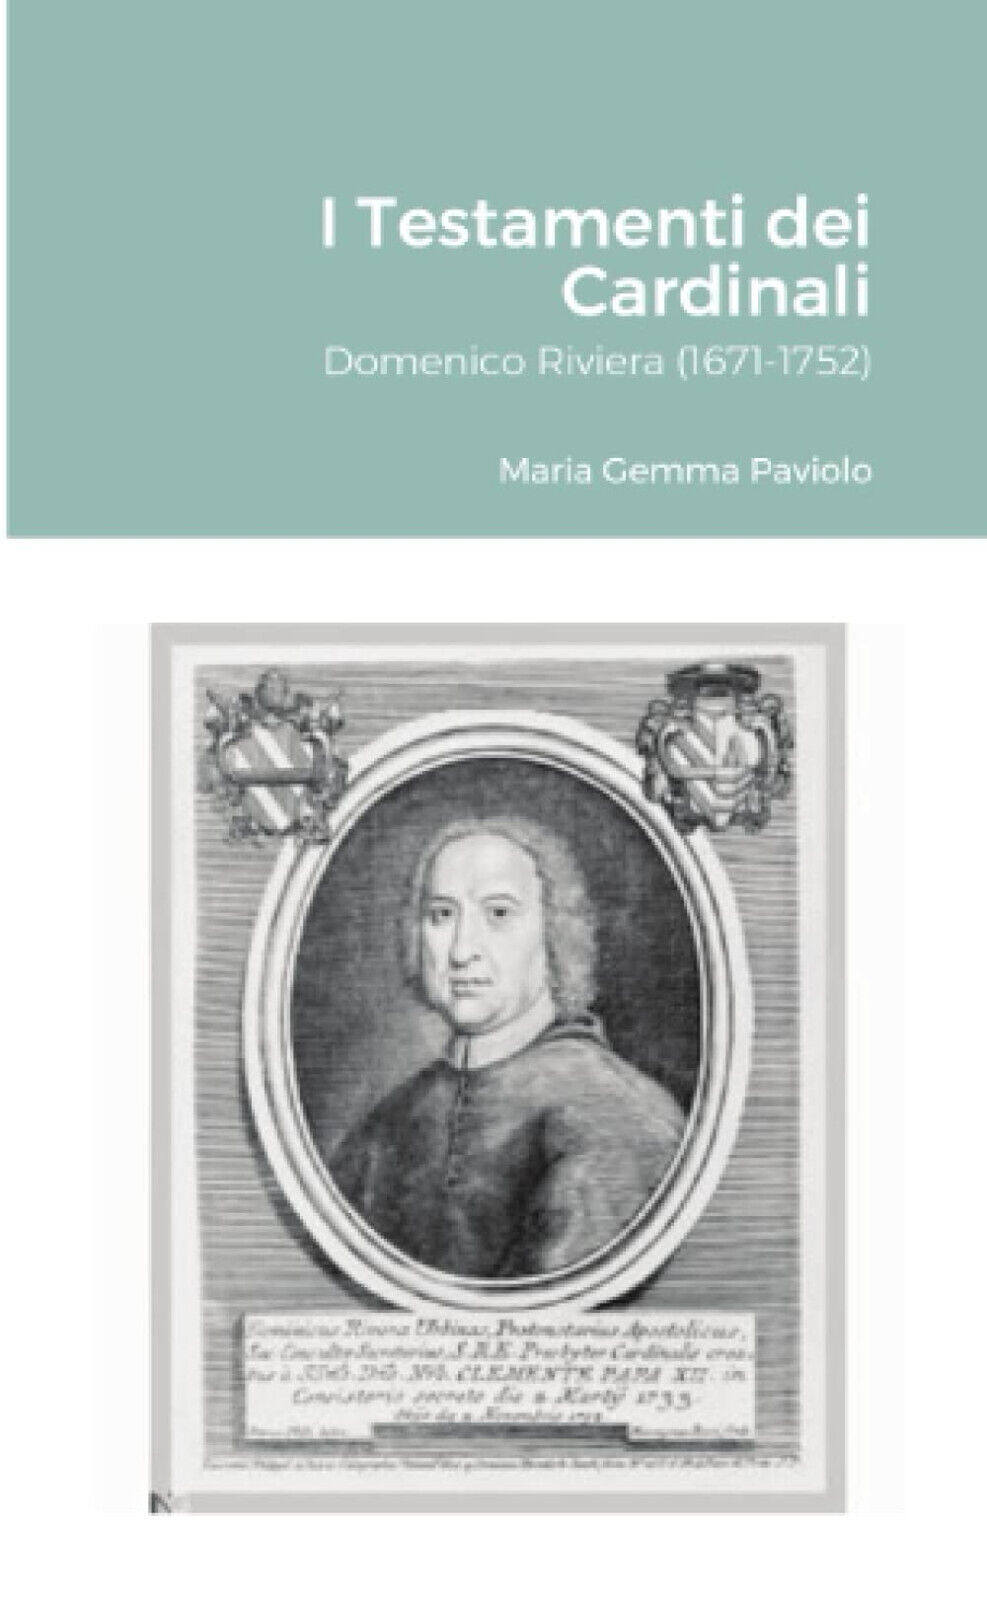 I Testamenti dei Cardinali: Domenico Riviera (1671-1752) - Lulu.com, 2021